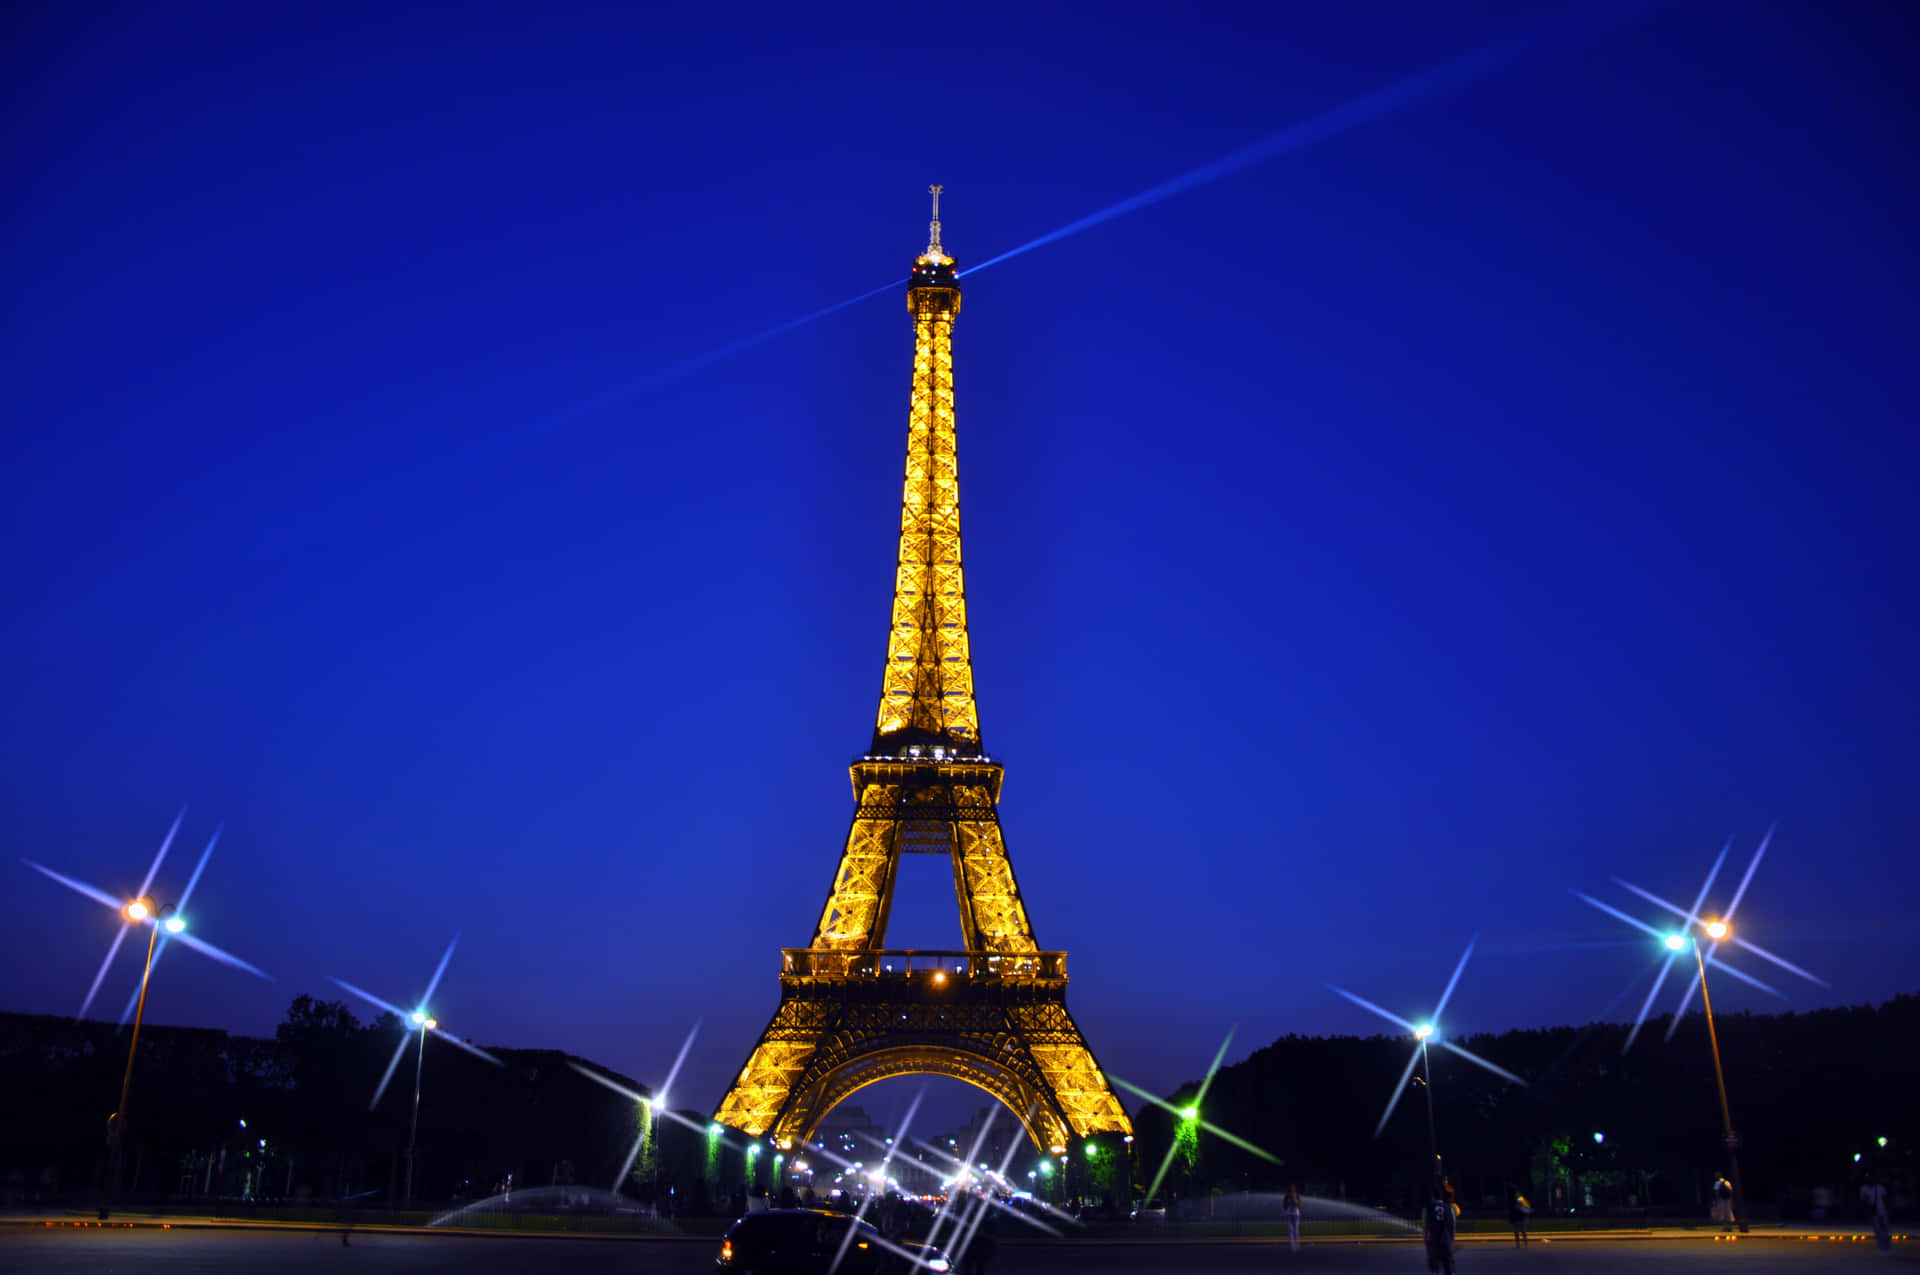 Bilddes Eiffelturms Bei Nacht Mit Blauem Himmel.